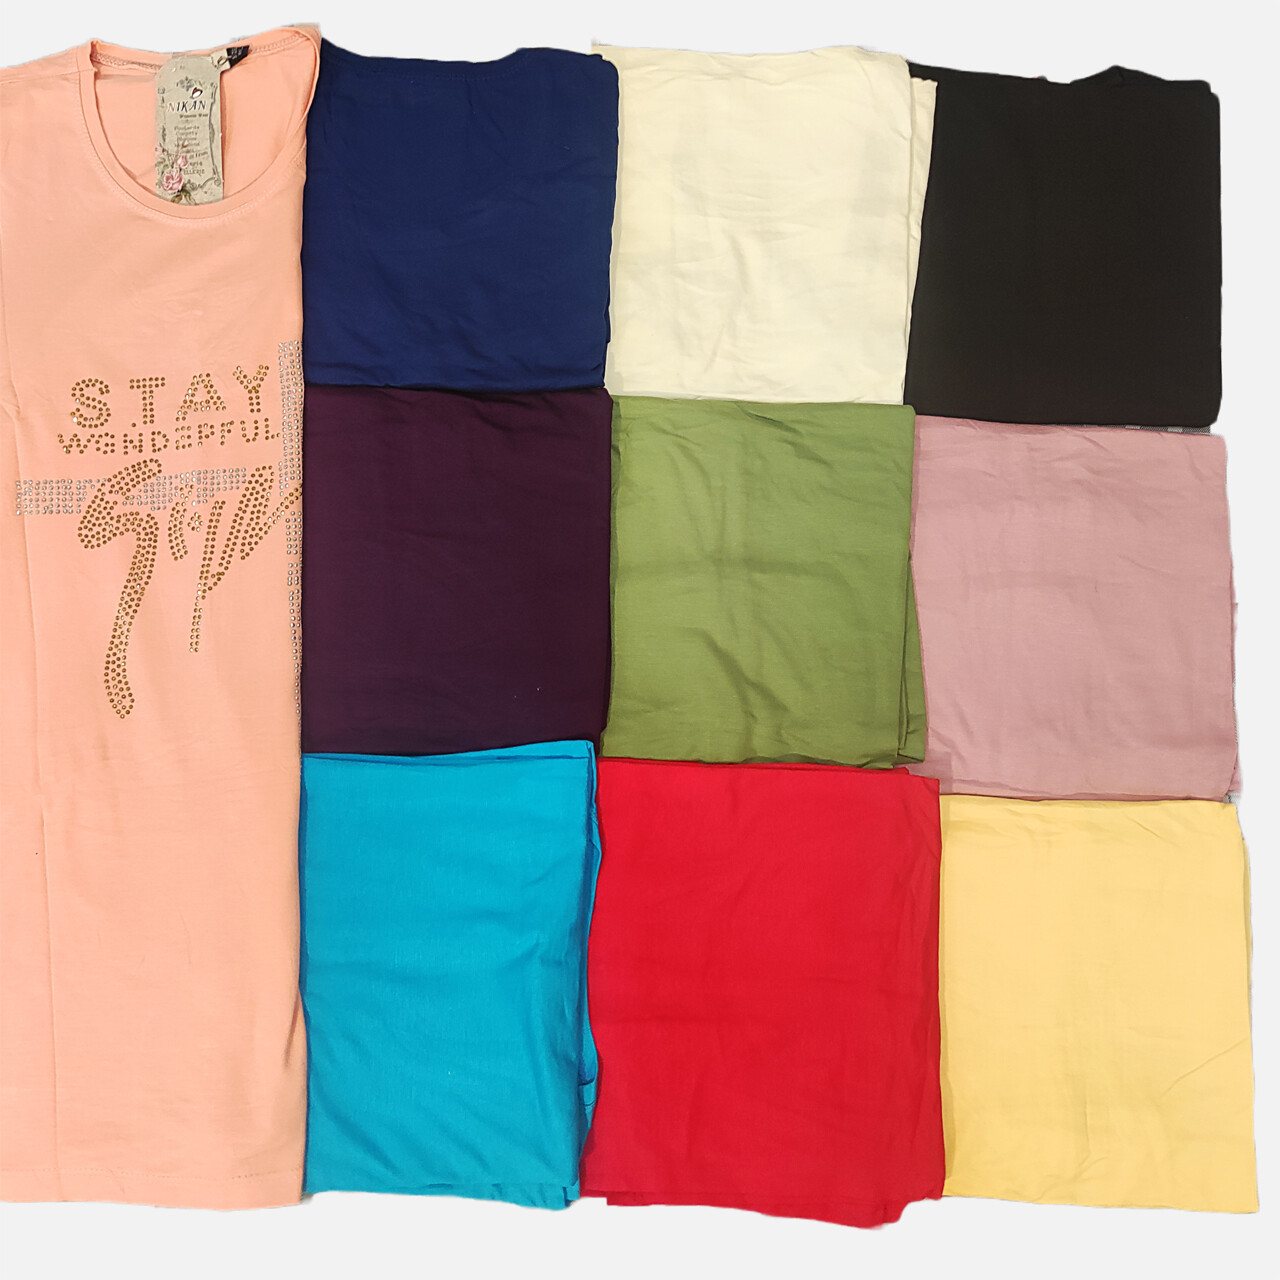 تی شرت زنانه نیکان مدل A در 10 رنگ متفاوت - تصویر ویژه